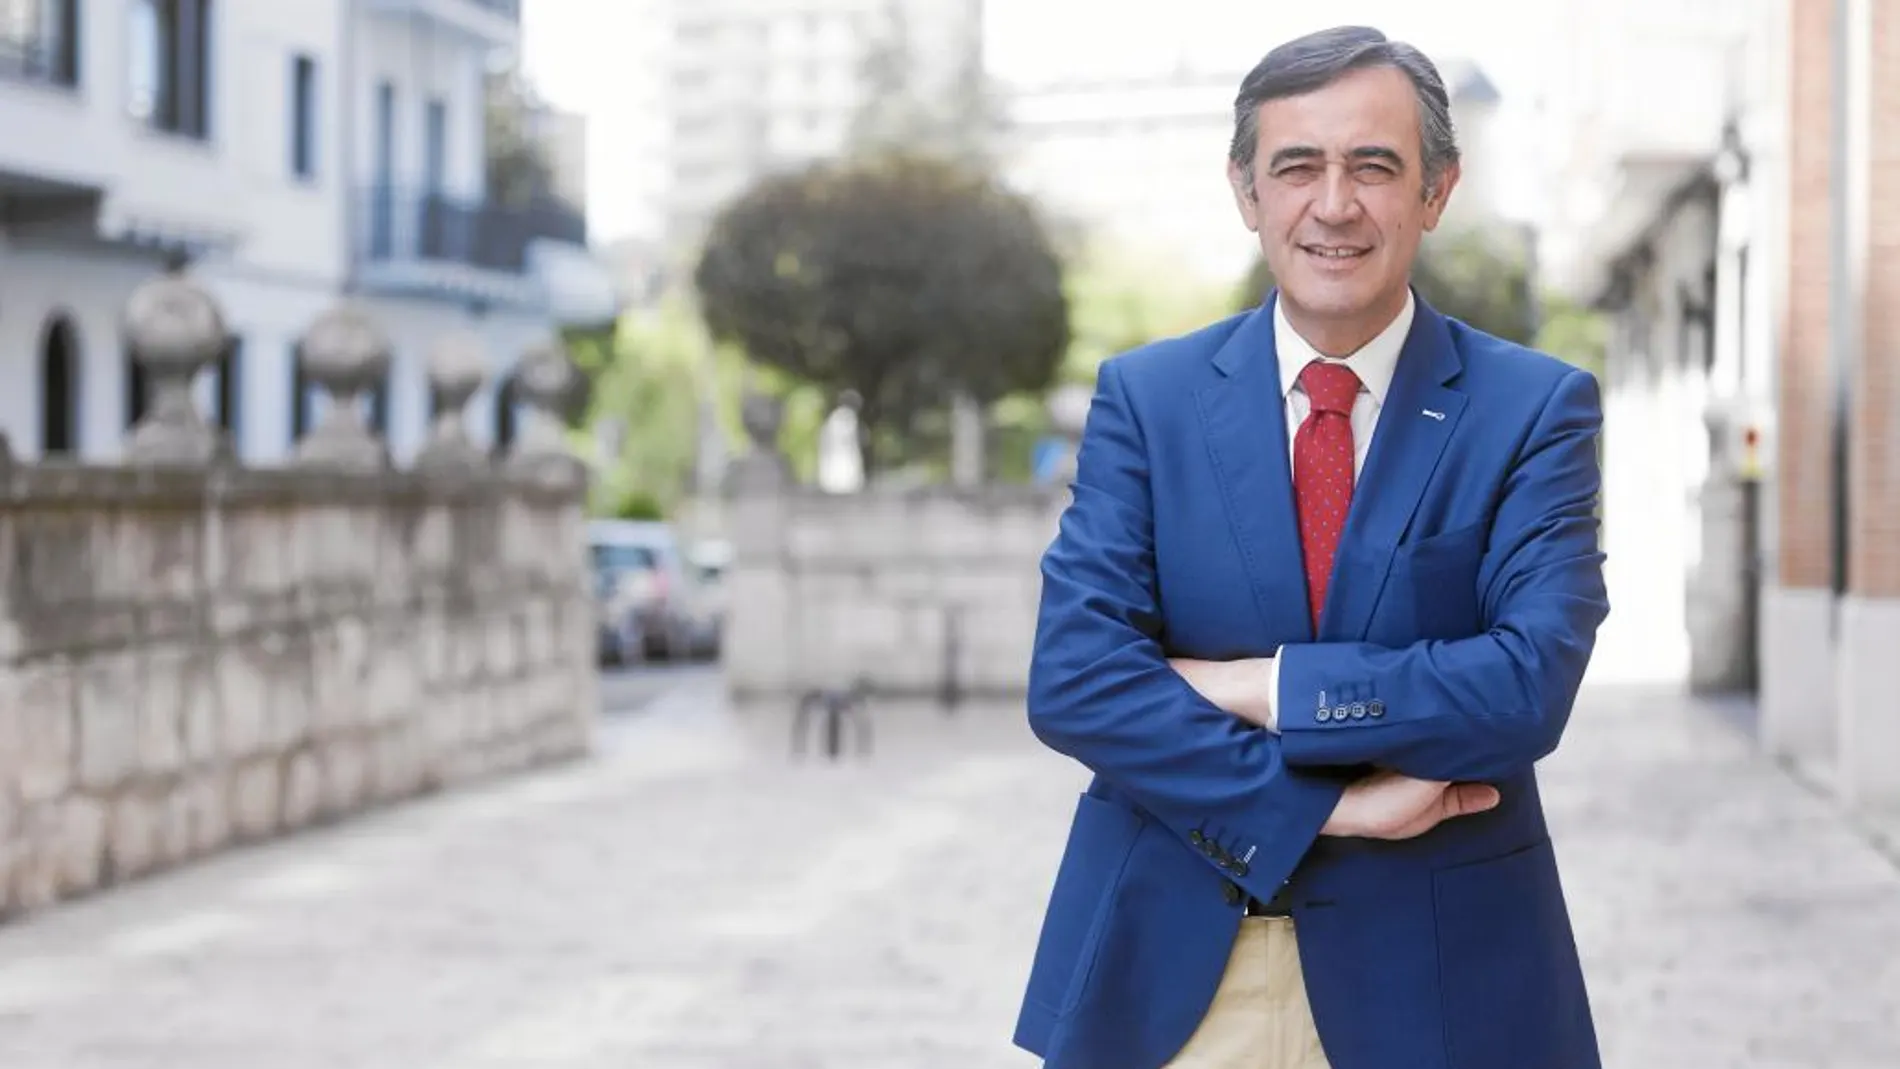 El expresidente de la Diputación de Soria y exalcalde de El Burgo de Osma, Antonio Pardo